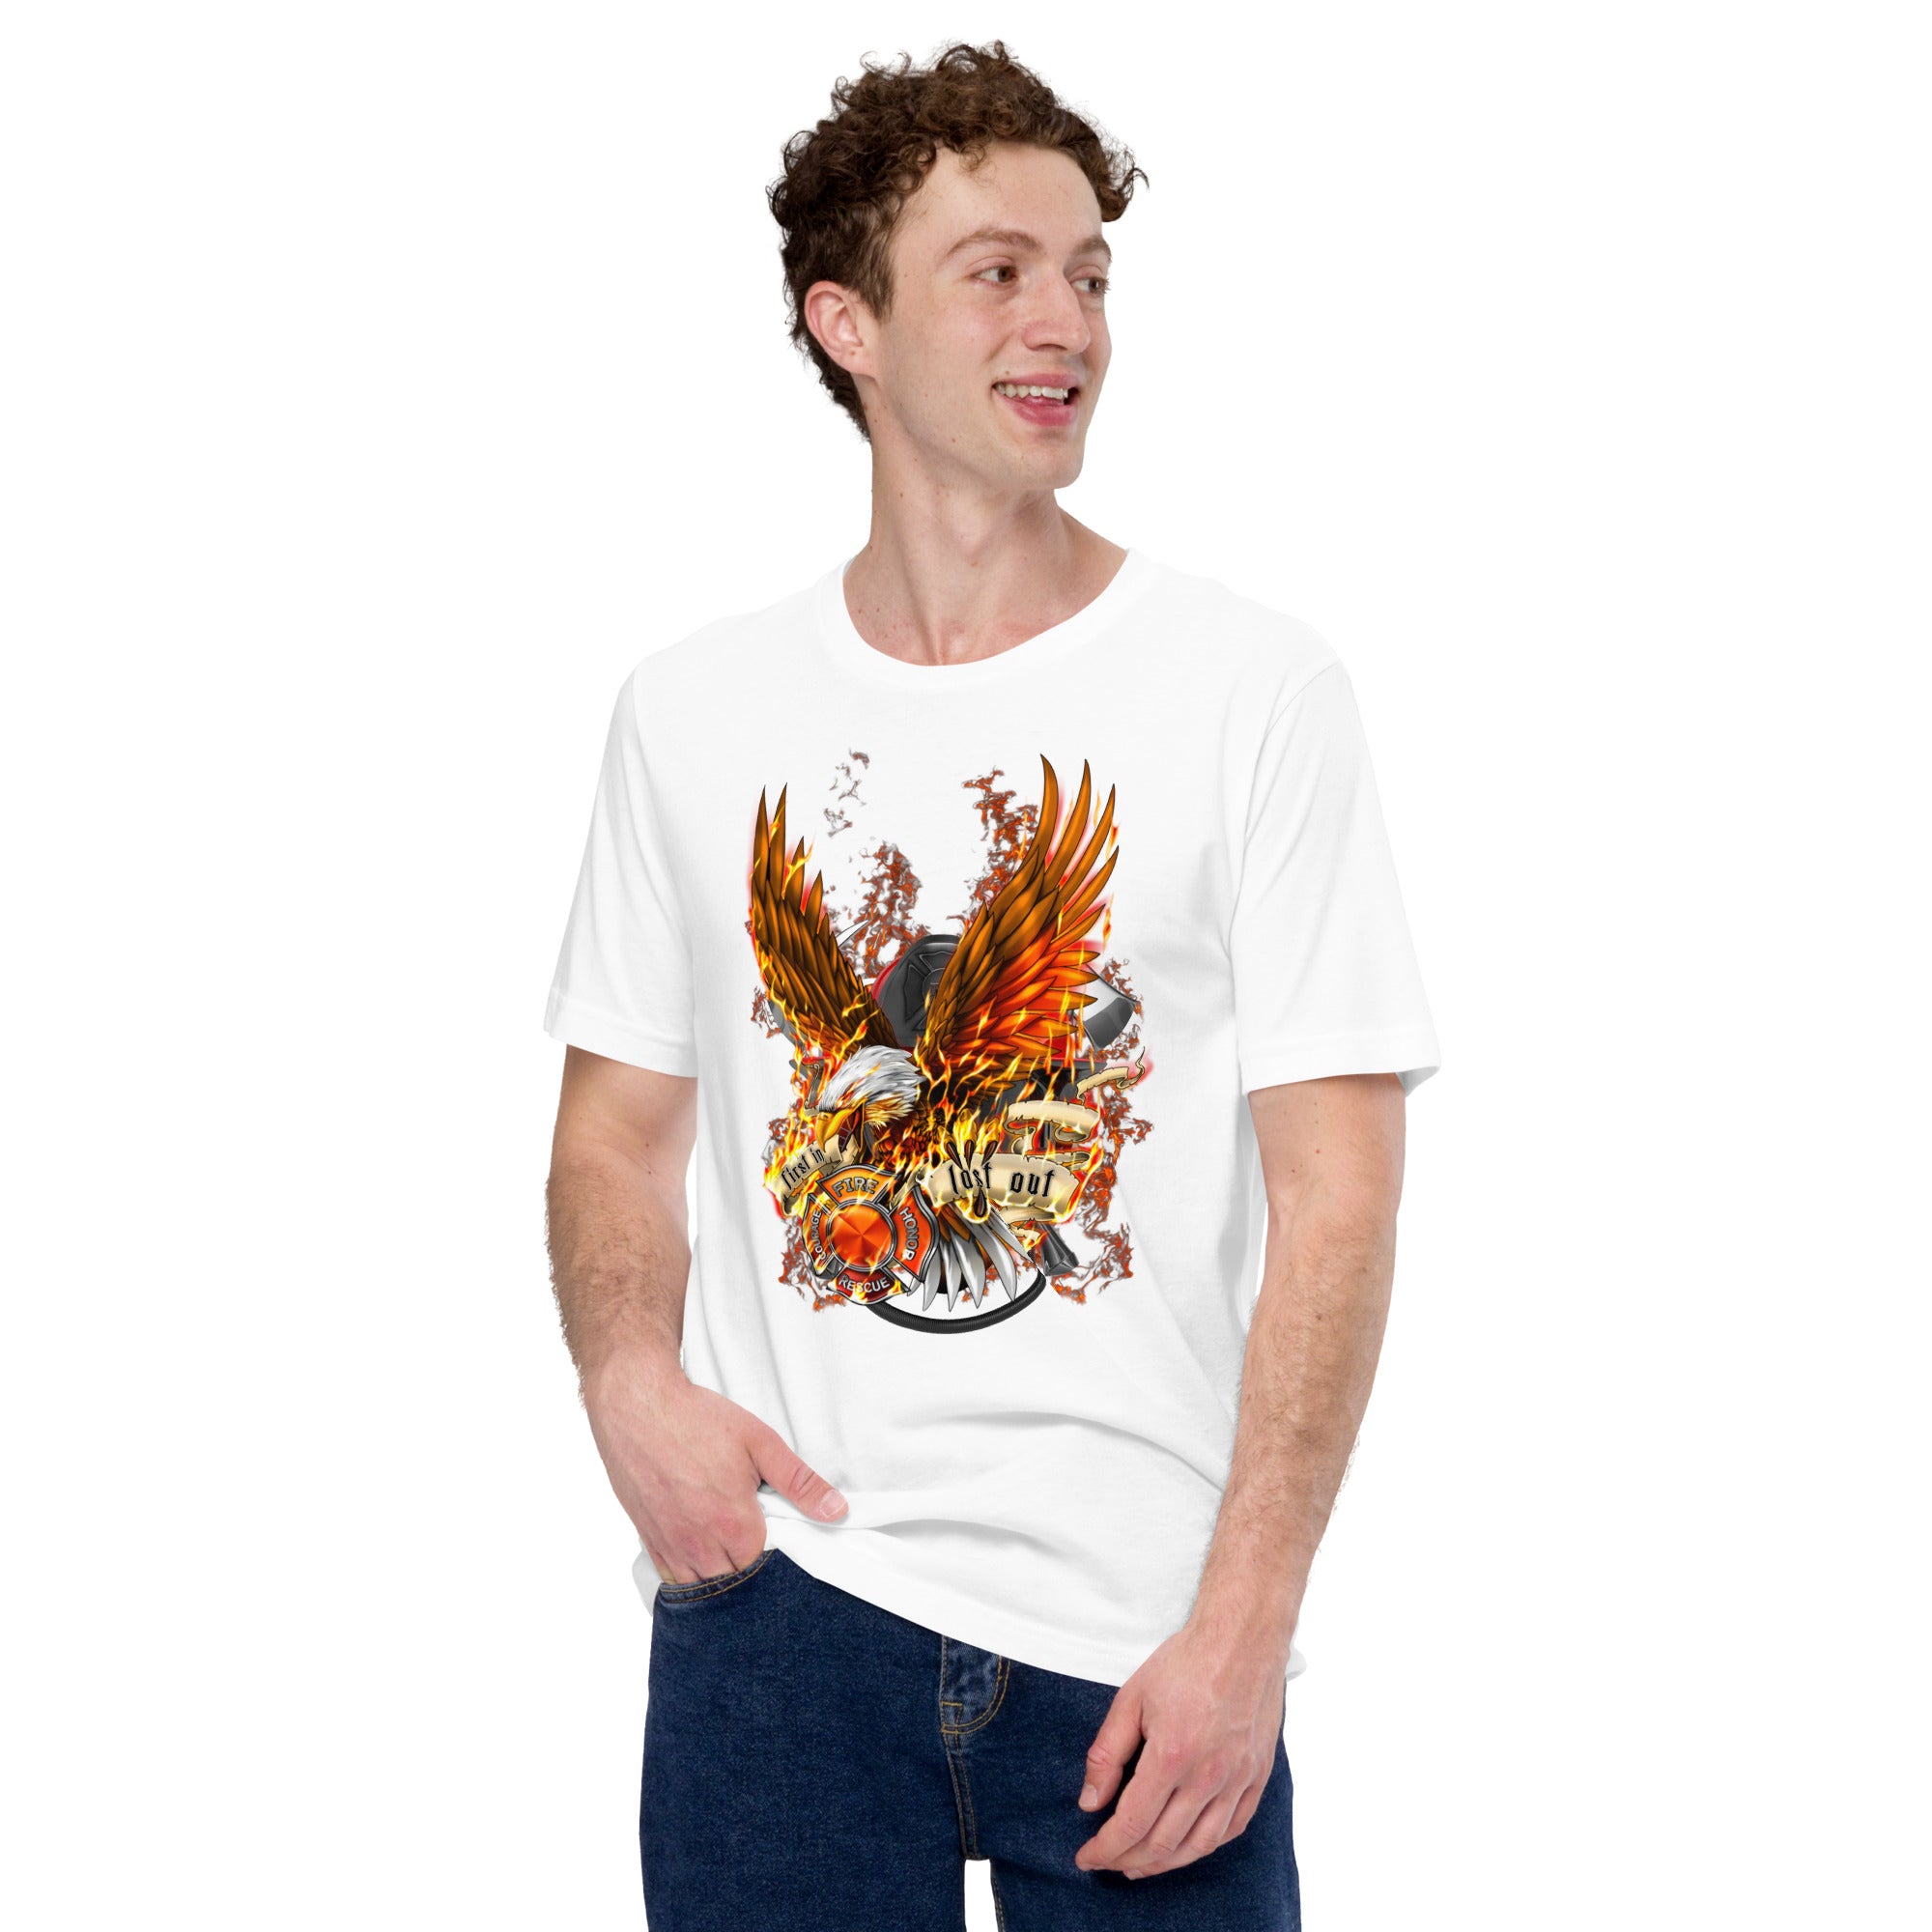 Feuerwehrmann mit brennendem Adler Klassisches Herren-T-Shirt